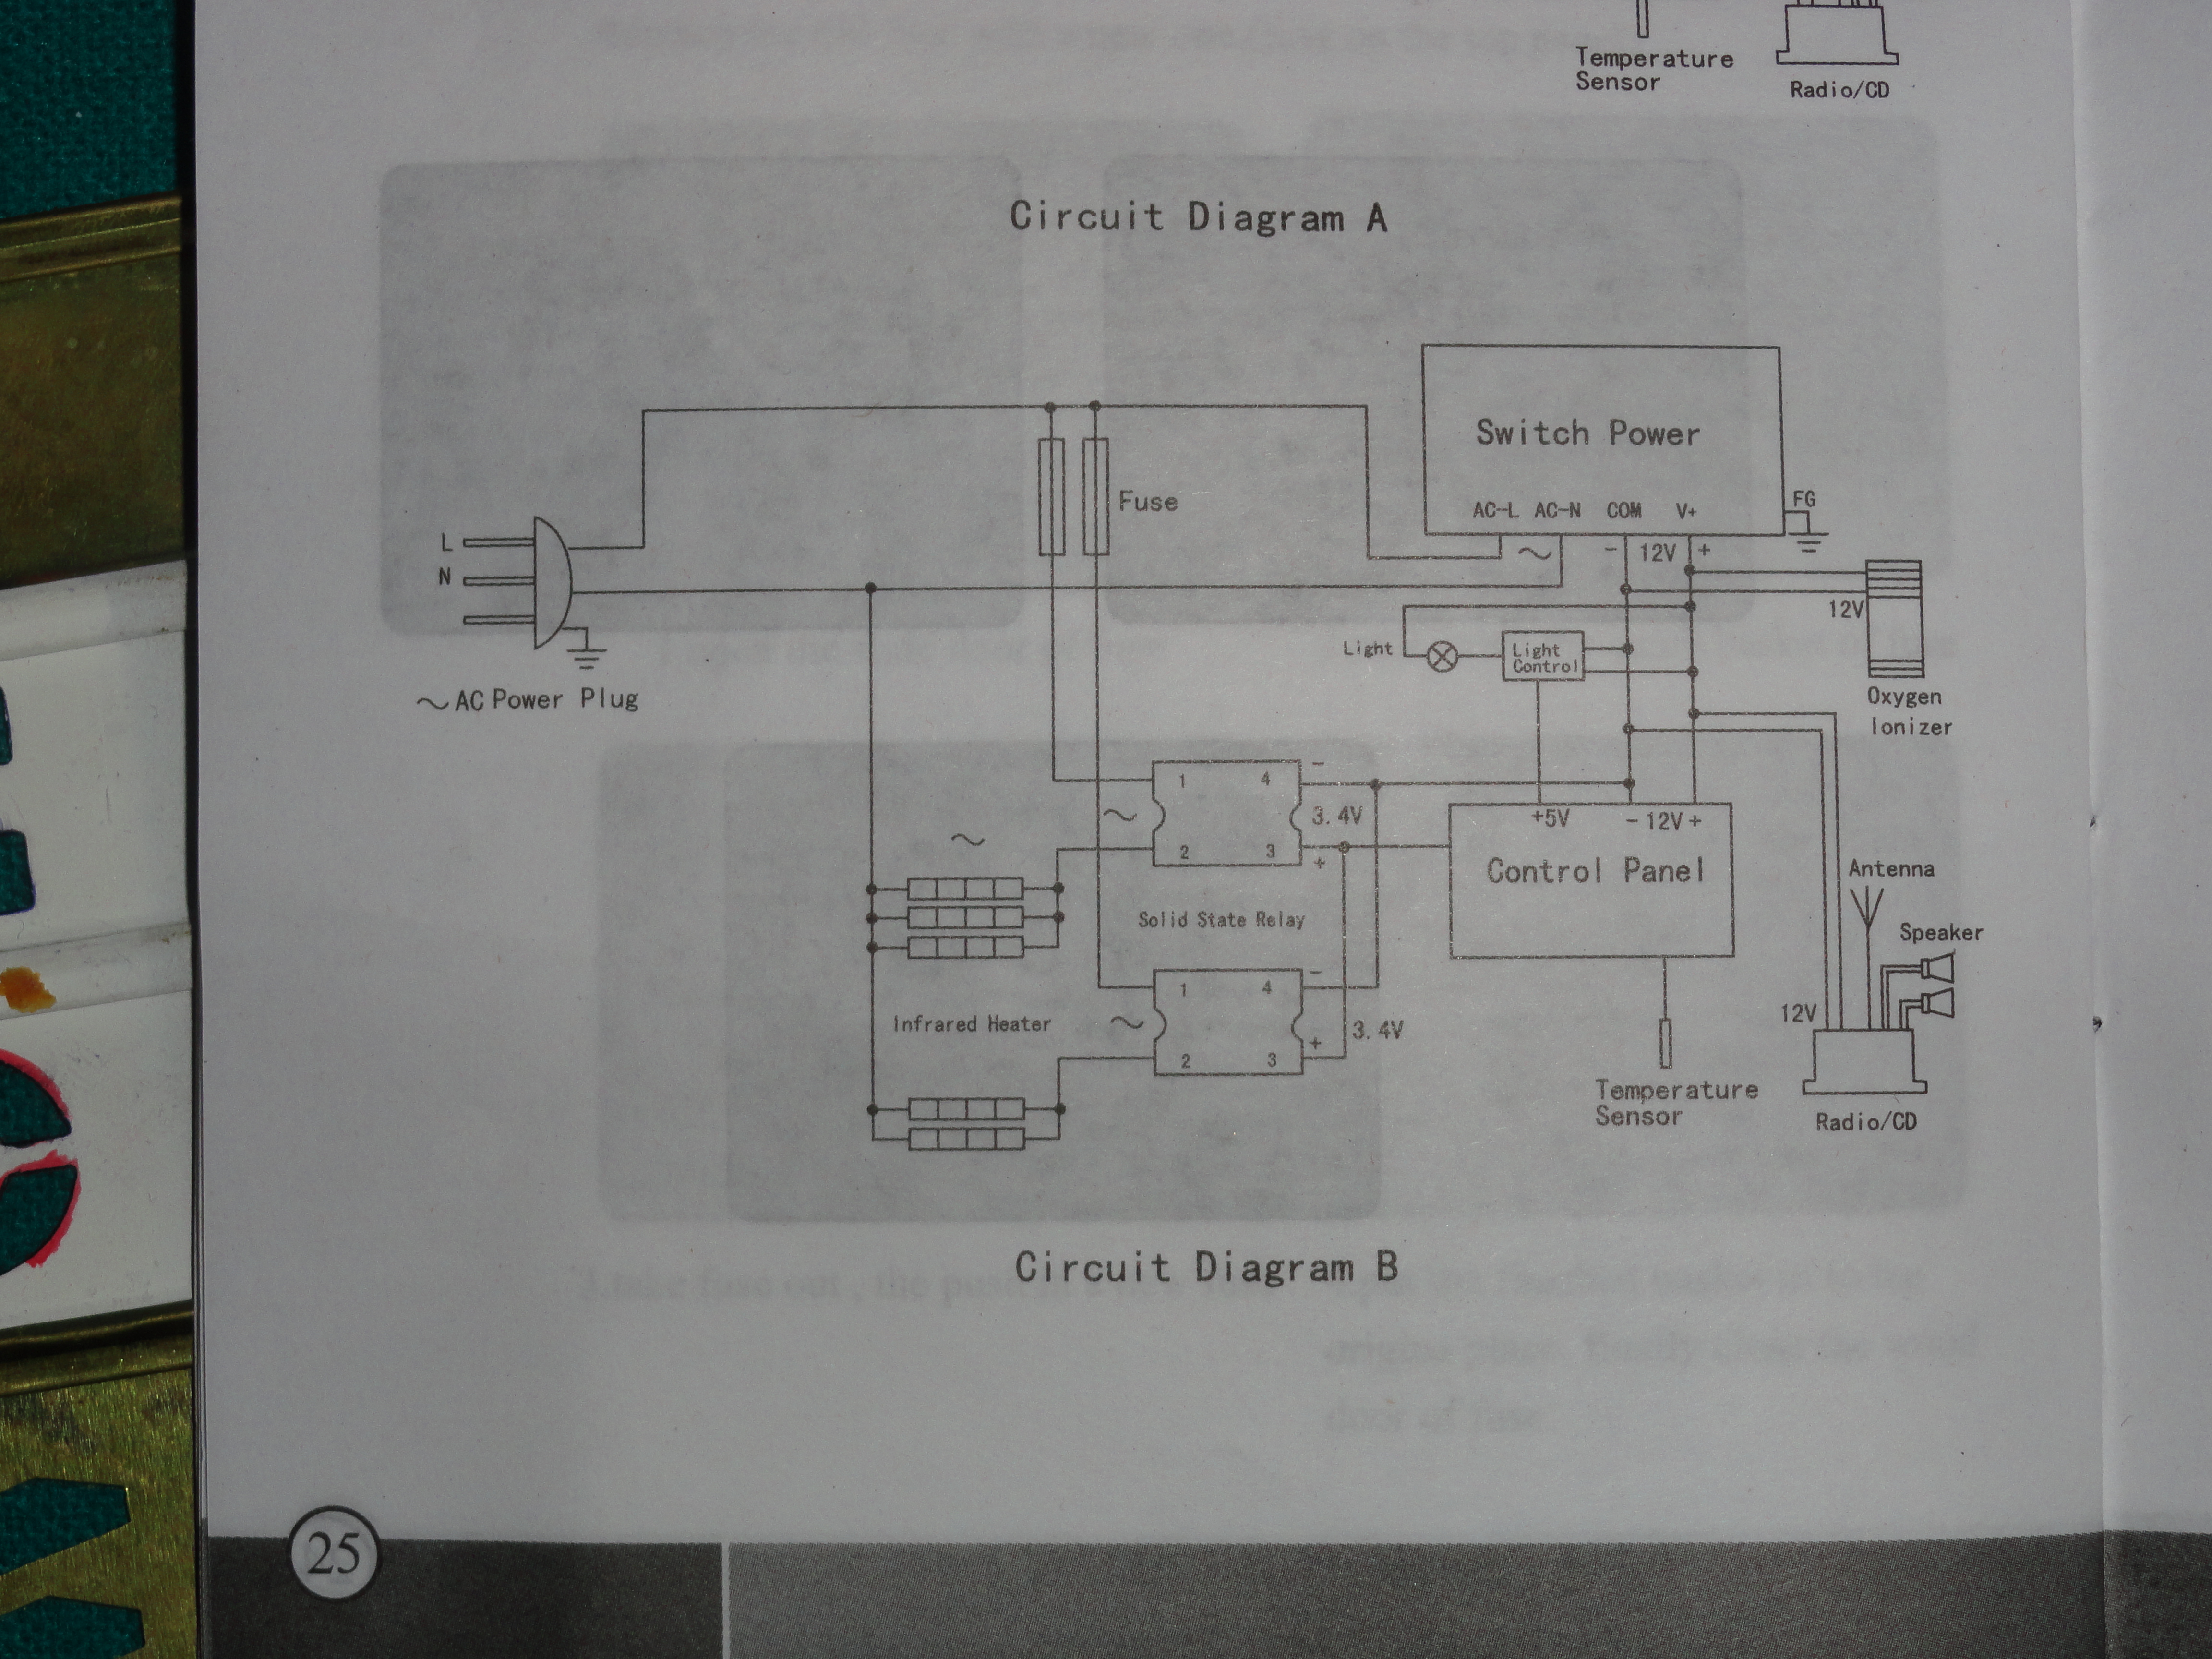 sauna heater wiring diagram